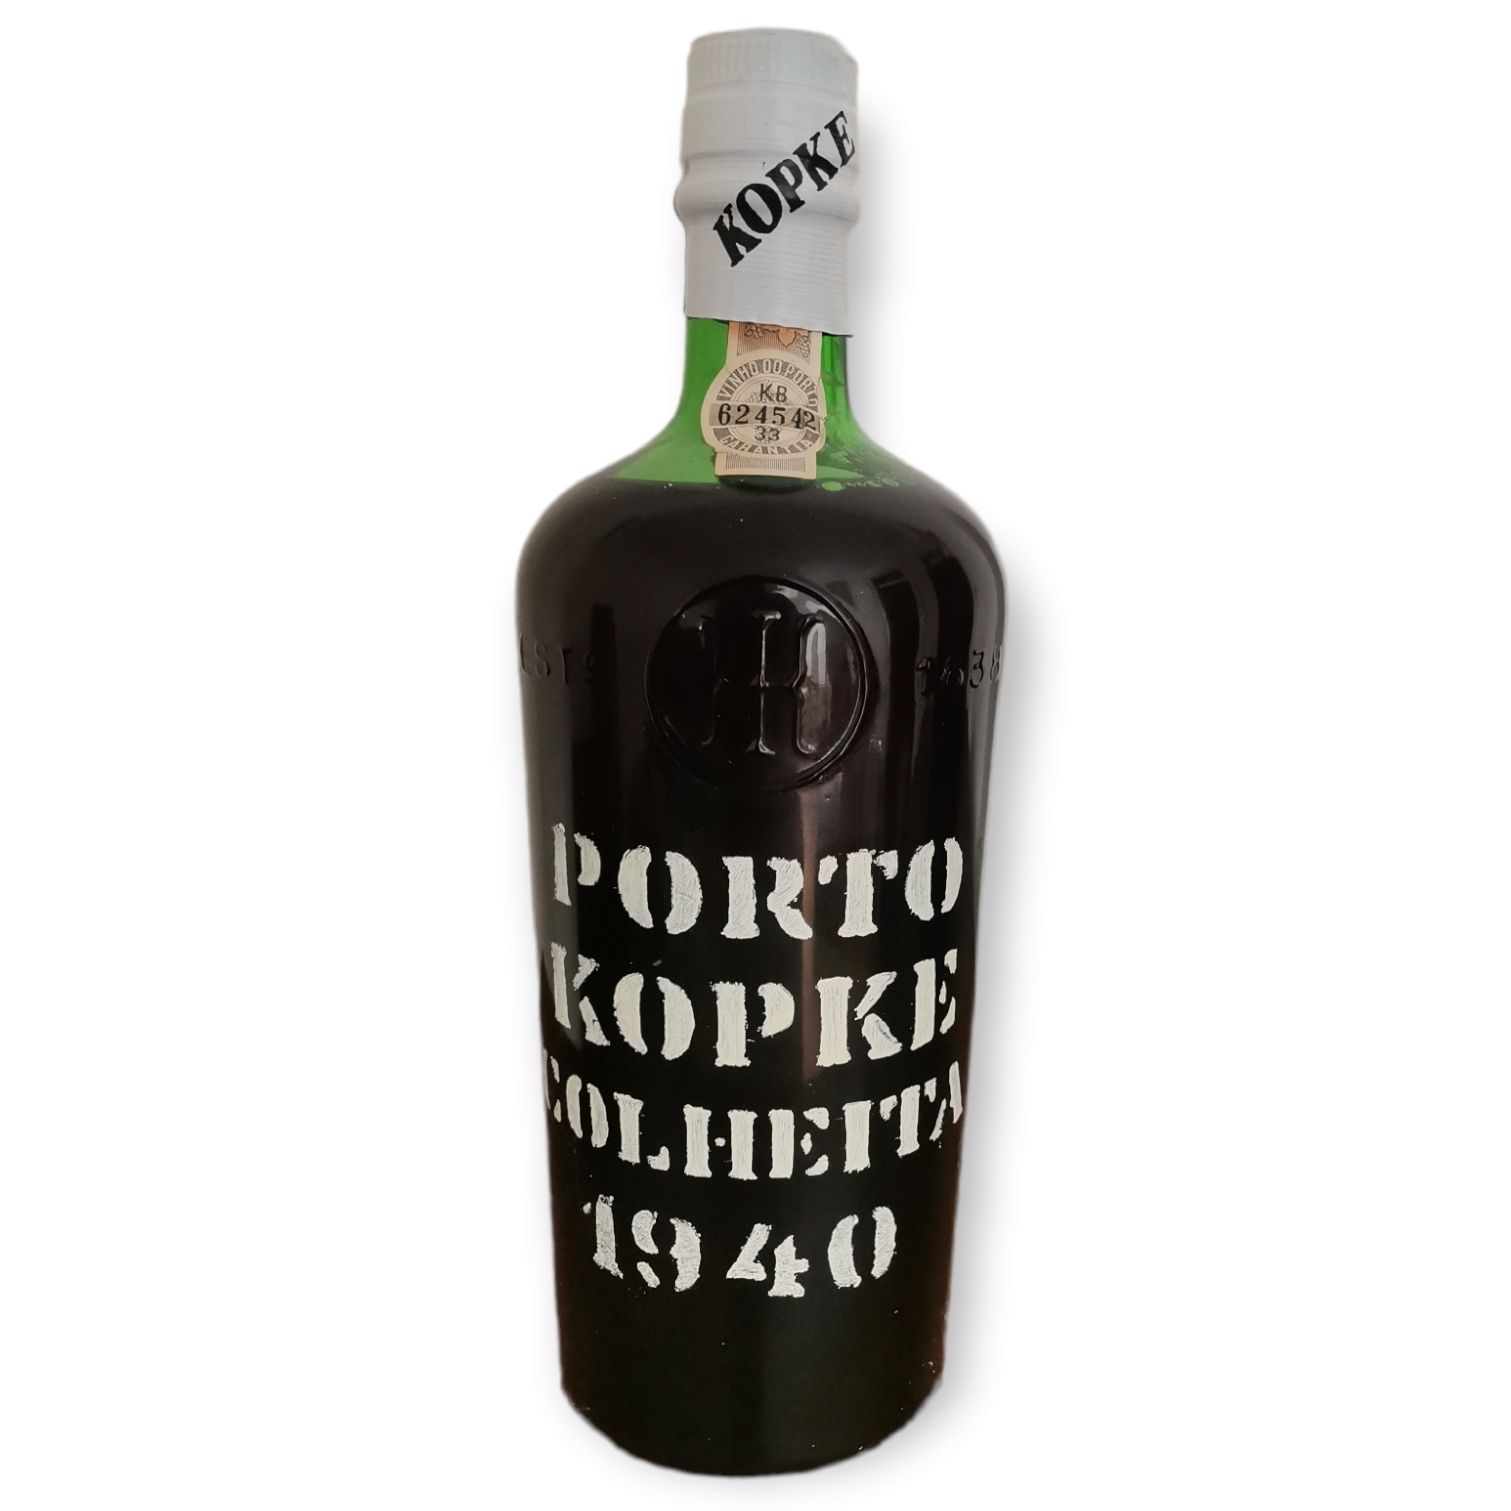 Kopke KOPKE Portwein-Flasche. Ernte von 1940, abgefüllt 1982.